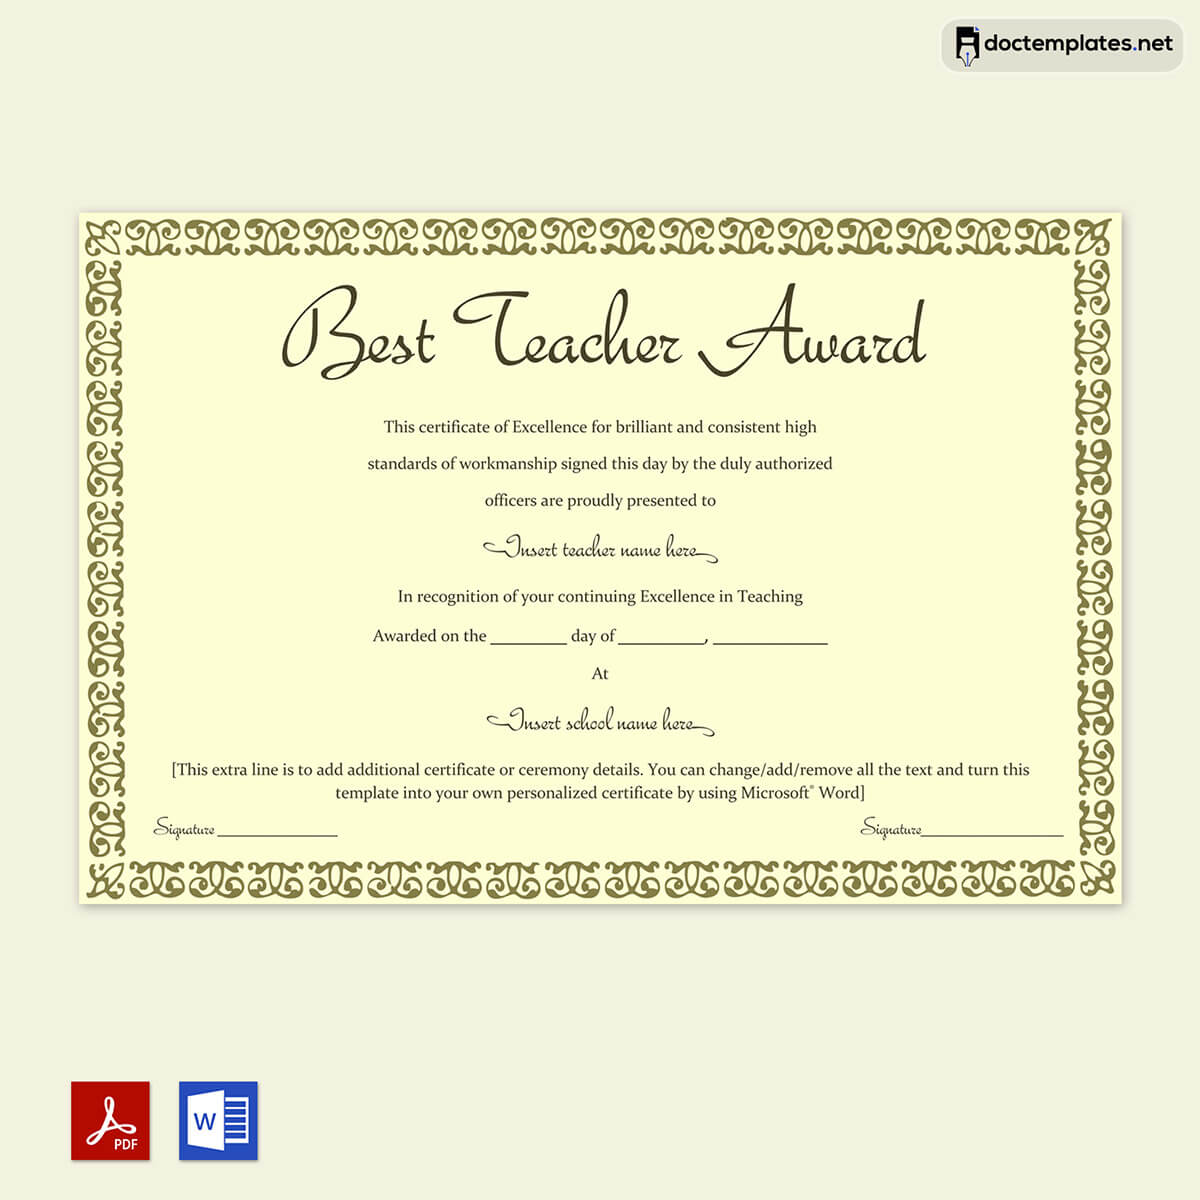 
world's best teacher award certificate templates